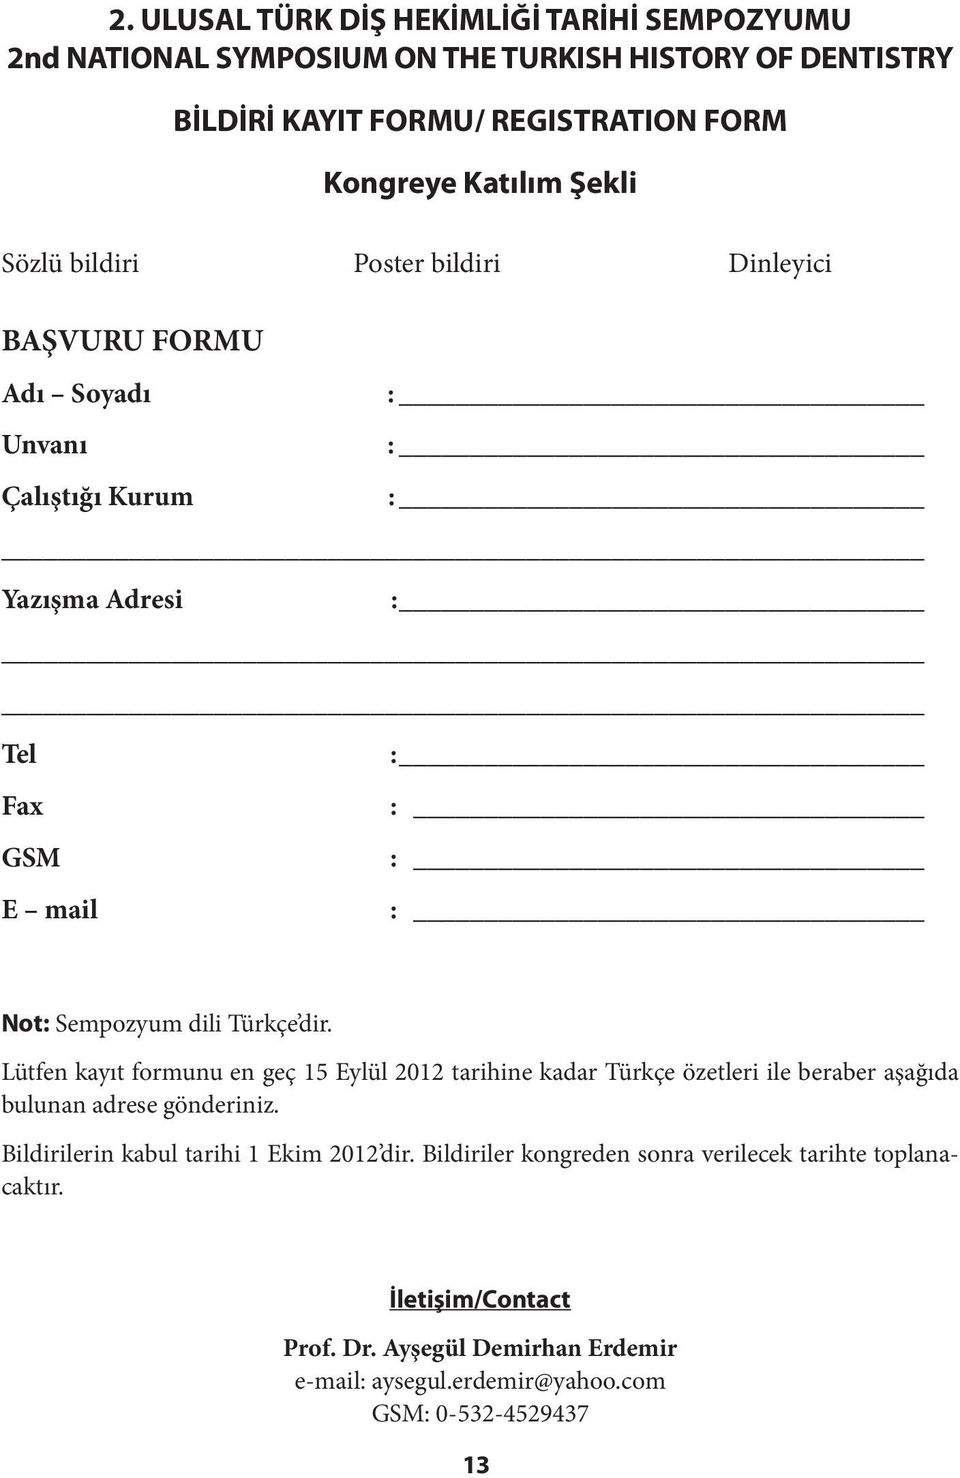 Lütfen kayıt formunu en geç 15 Eylül 2012 tarihine kadar Türkçe özetleri ile beraber aşağıda bulunan adrese gönderiniz. Bildirilerin kabul tarihi 1 Ekim 2012 dir.